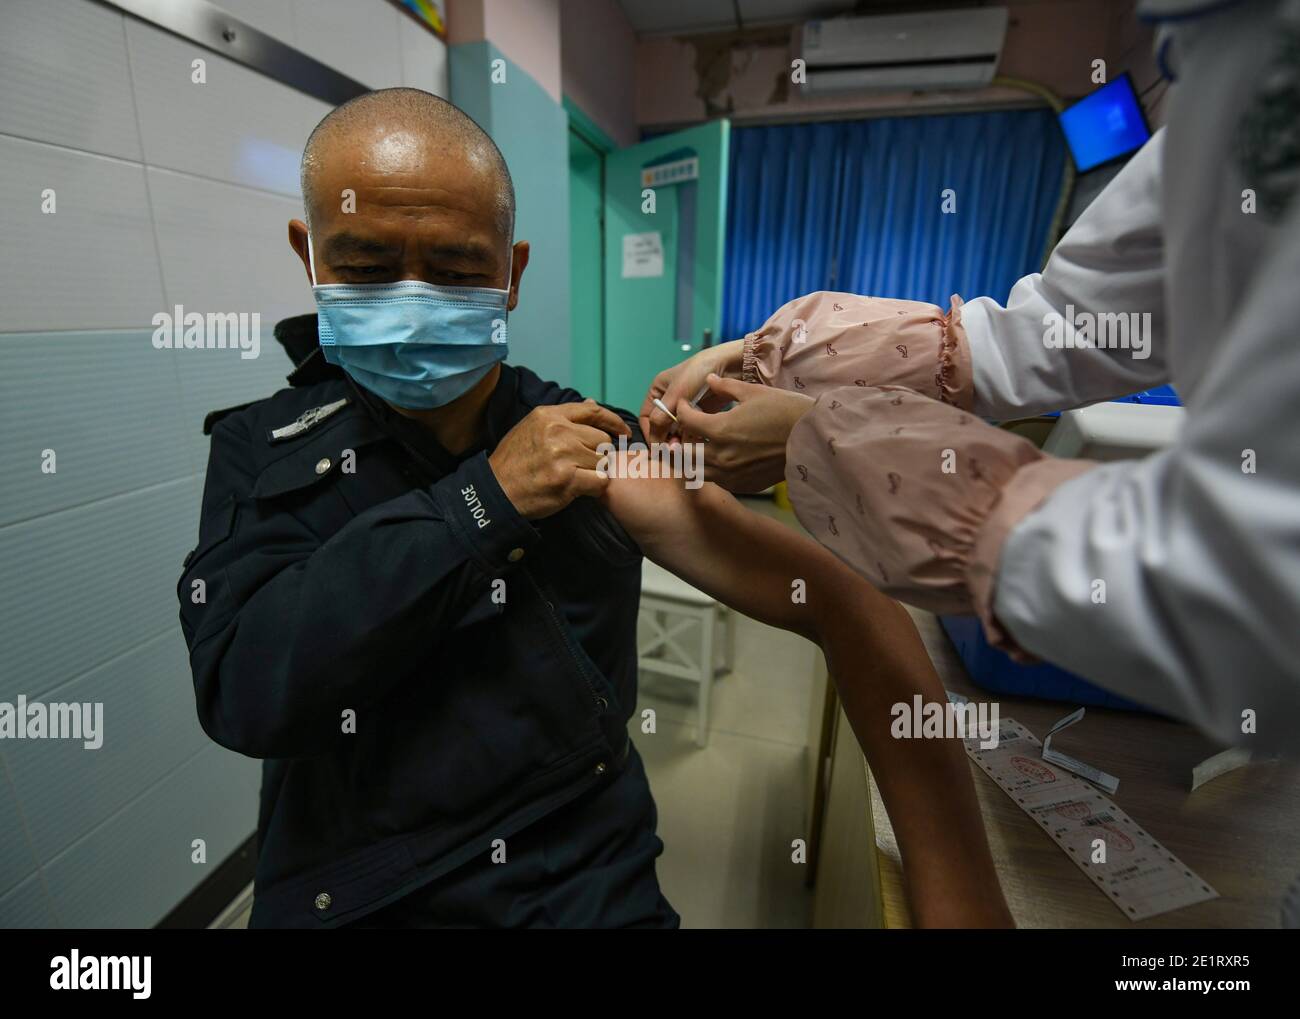 Chengdu, Sichuan, China. Januar 2021. Qiao Zhibing erhält COVID-19-Impfung im Shuangnan Gesundheitszentrum in Chengdu, südwestlich der chinesischen Provinz Sichuan, 8. Januar 2021. Am 10. Januar 2021 ist Chinas erster Tag der chinesischen Volkspolizei, Doch für Qiao Zhibing, einen 59-jährigen Polizisten der Jiangxi Straßenpolizeiwache der Wuhou Bezirksniederlassung des Büros für Öffentliche Sicherheit in Chengdu, wird es sein "letzter" Polizeitag sein, da er im Juni dieses Jahres im Alter von 60 Jahren in den Ruhestand gehen wird. Quelle: Xinhua/Alamy Live News Stockfoto